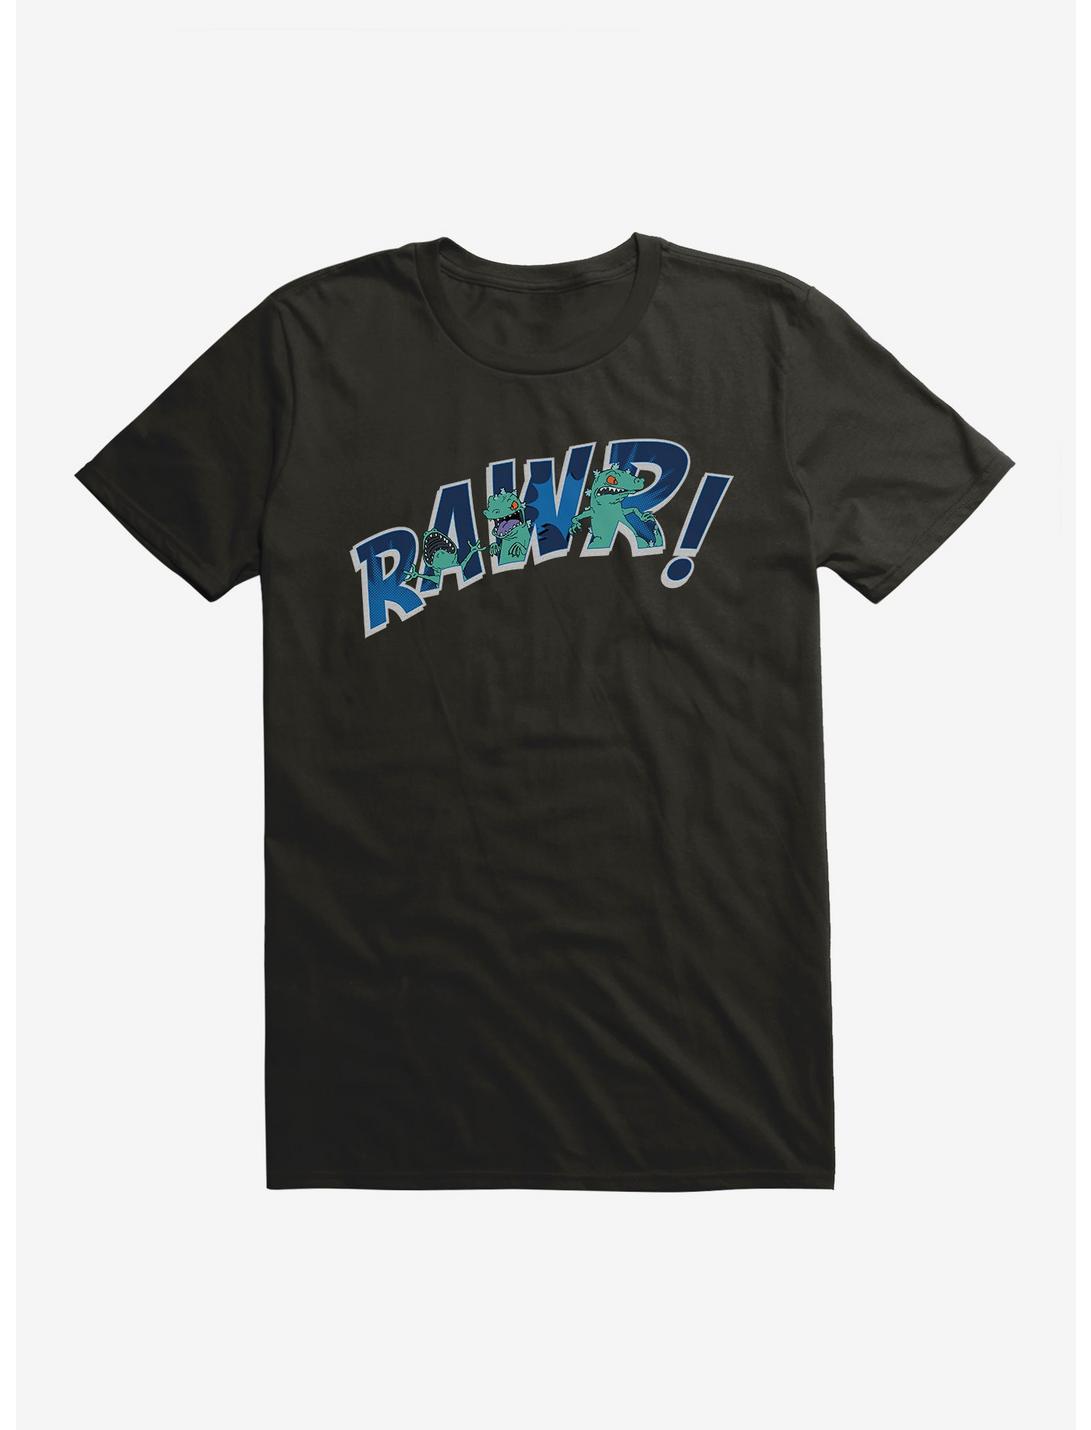 Rugrats Reptar Rawr T-Shirt, , hi-res